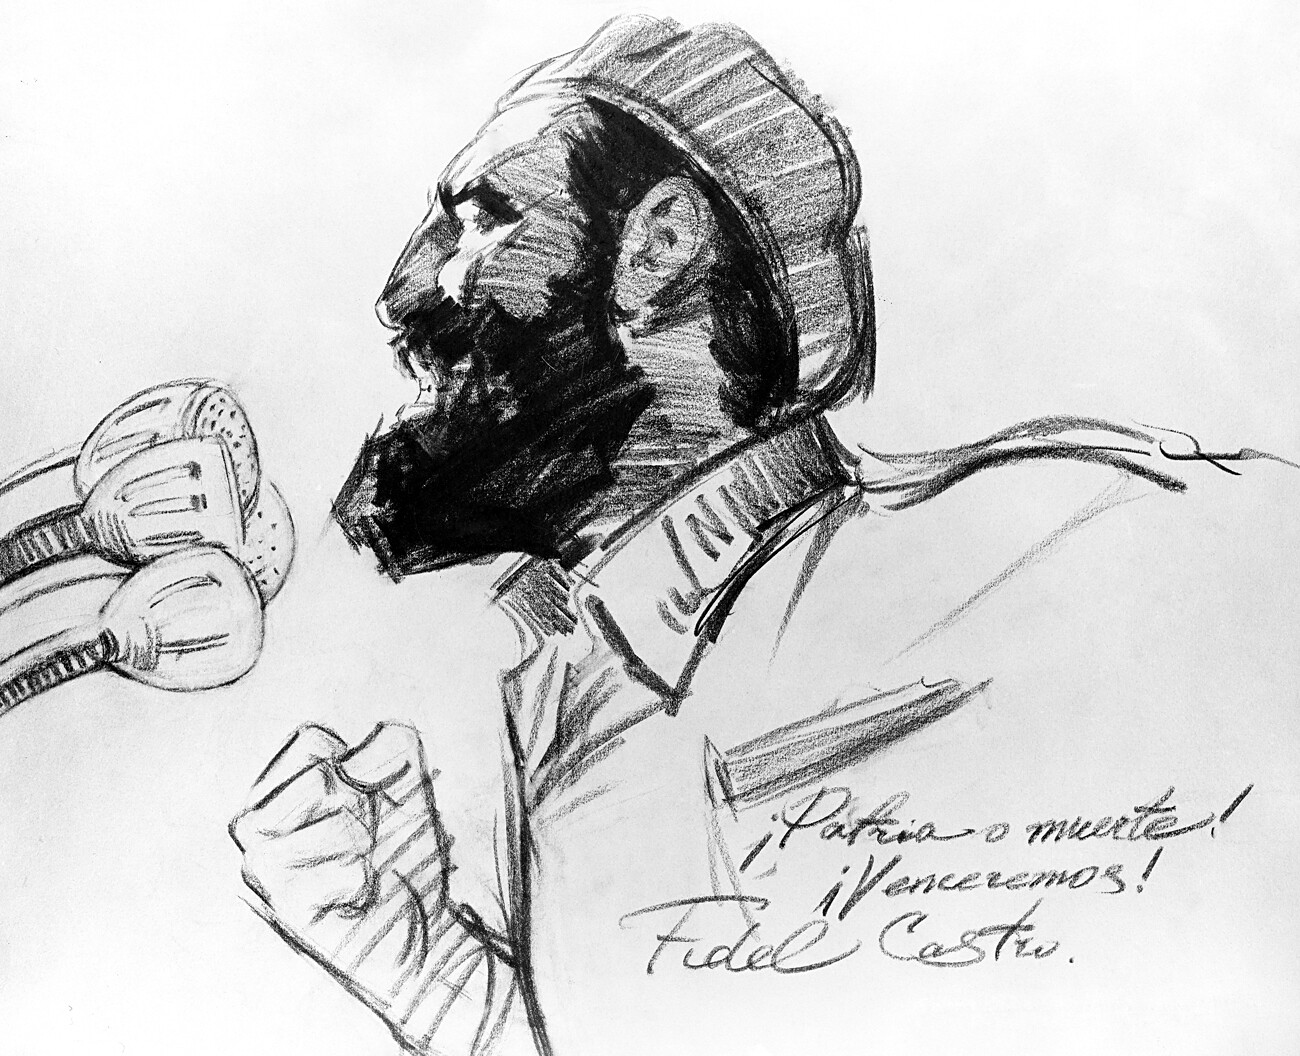 '¡Patria o Muerte! Venceremos!' Retrato de Fidel Castro de la serie del pintor Iván Sushchenko 'Mis impresiones de Cuba' (1962). 